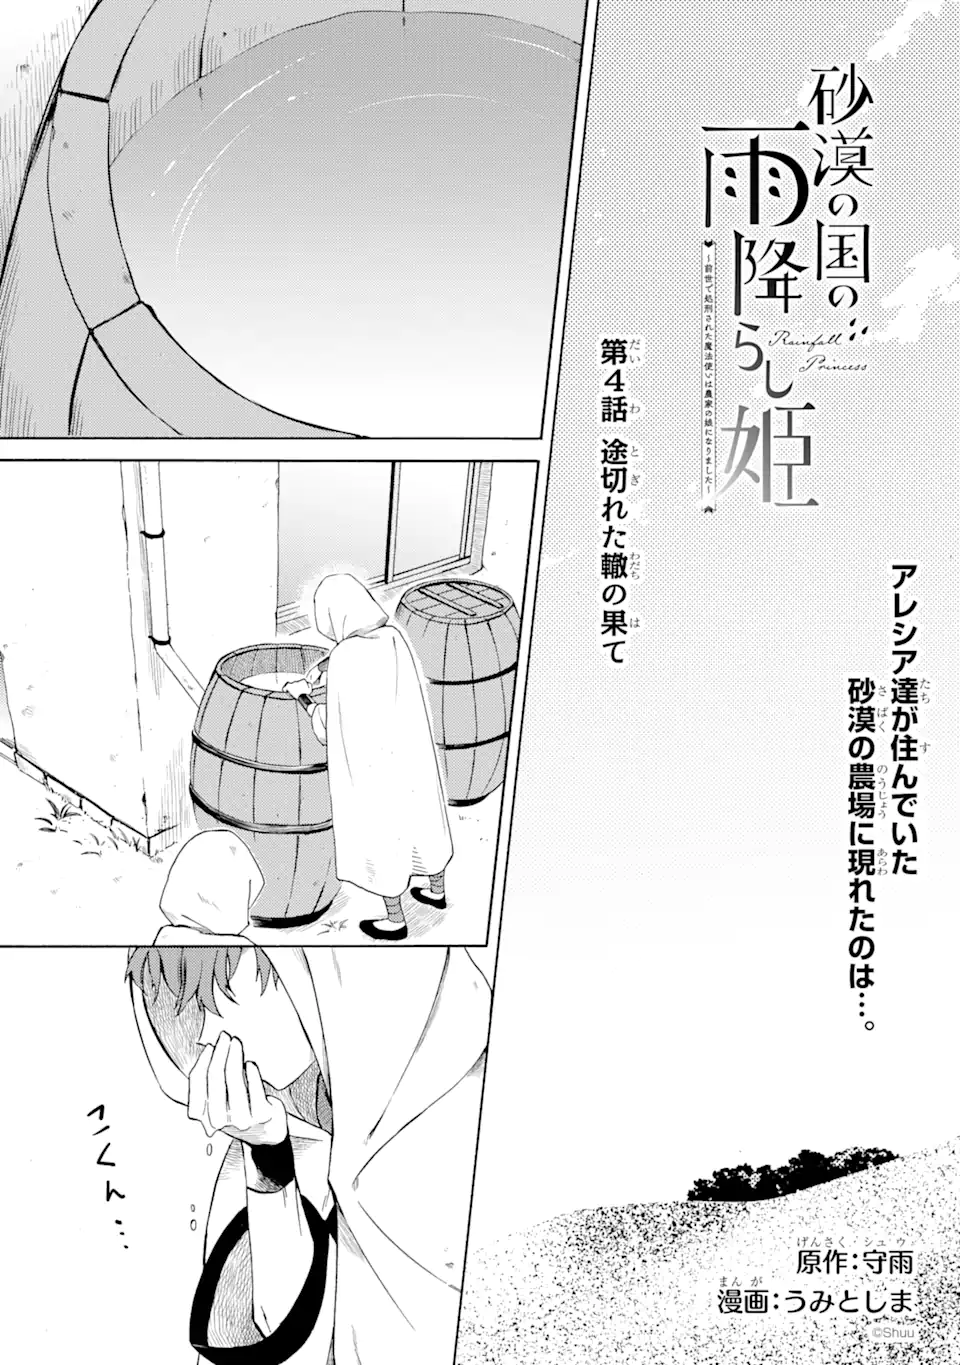 Sabaku no Kuni no Ame Furashi Hime - Chapter 4.1 - Page 1